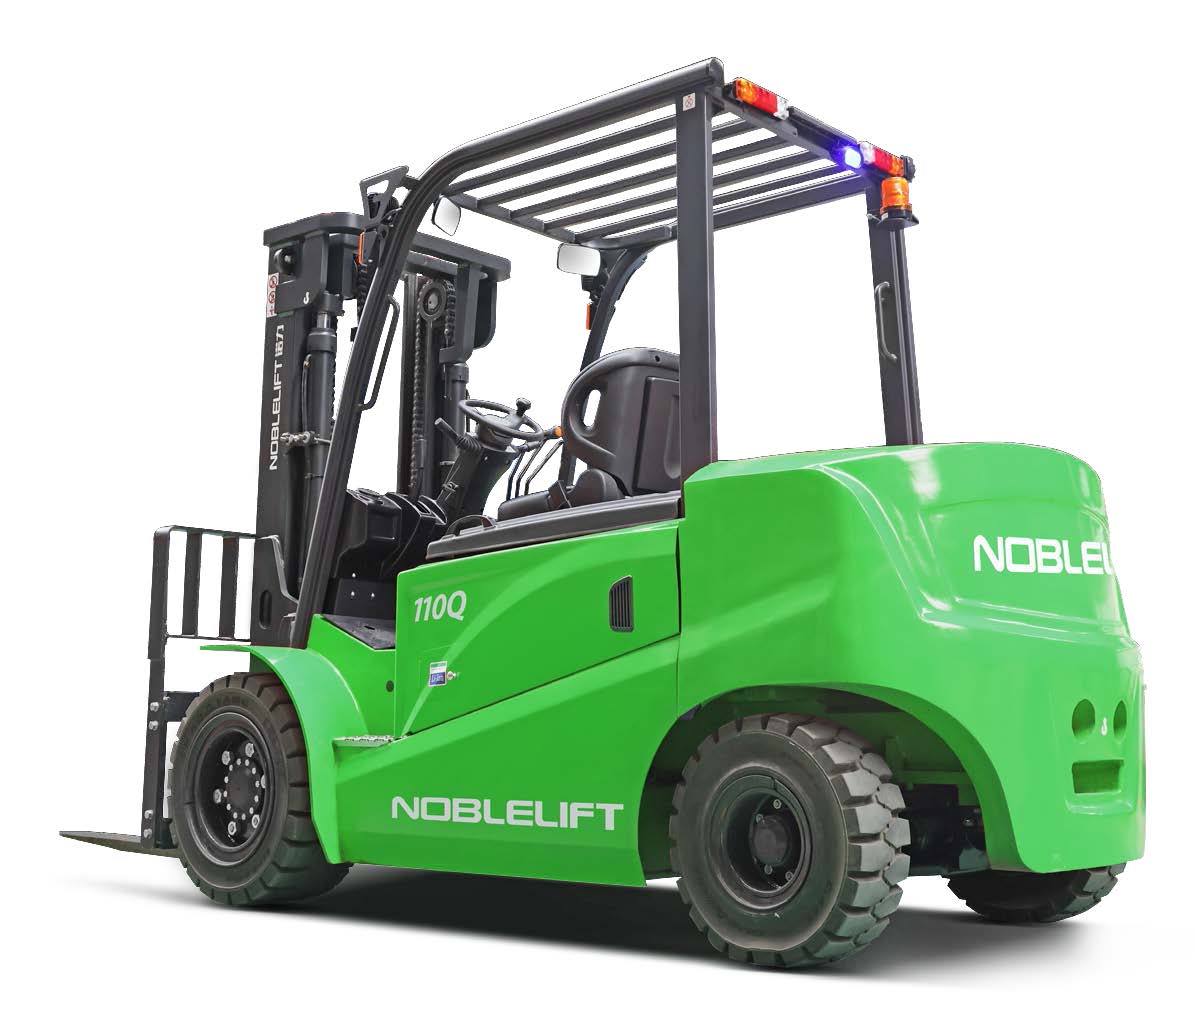 Noblelift Rough Terrain Forklift